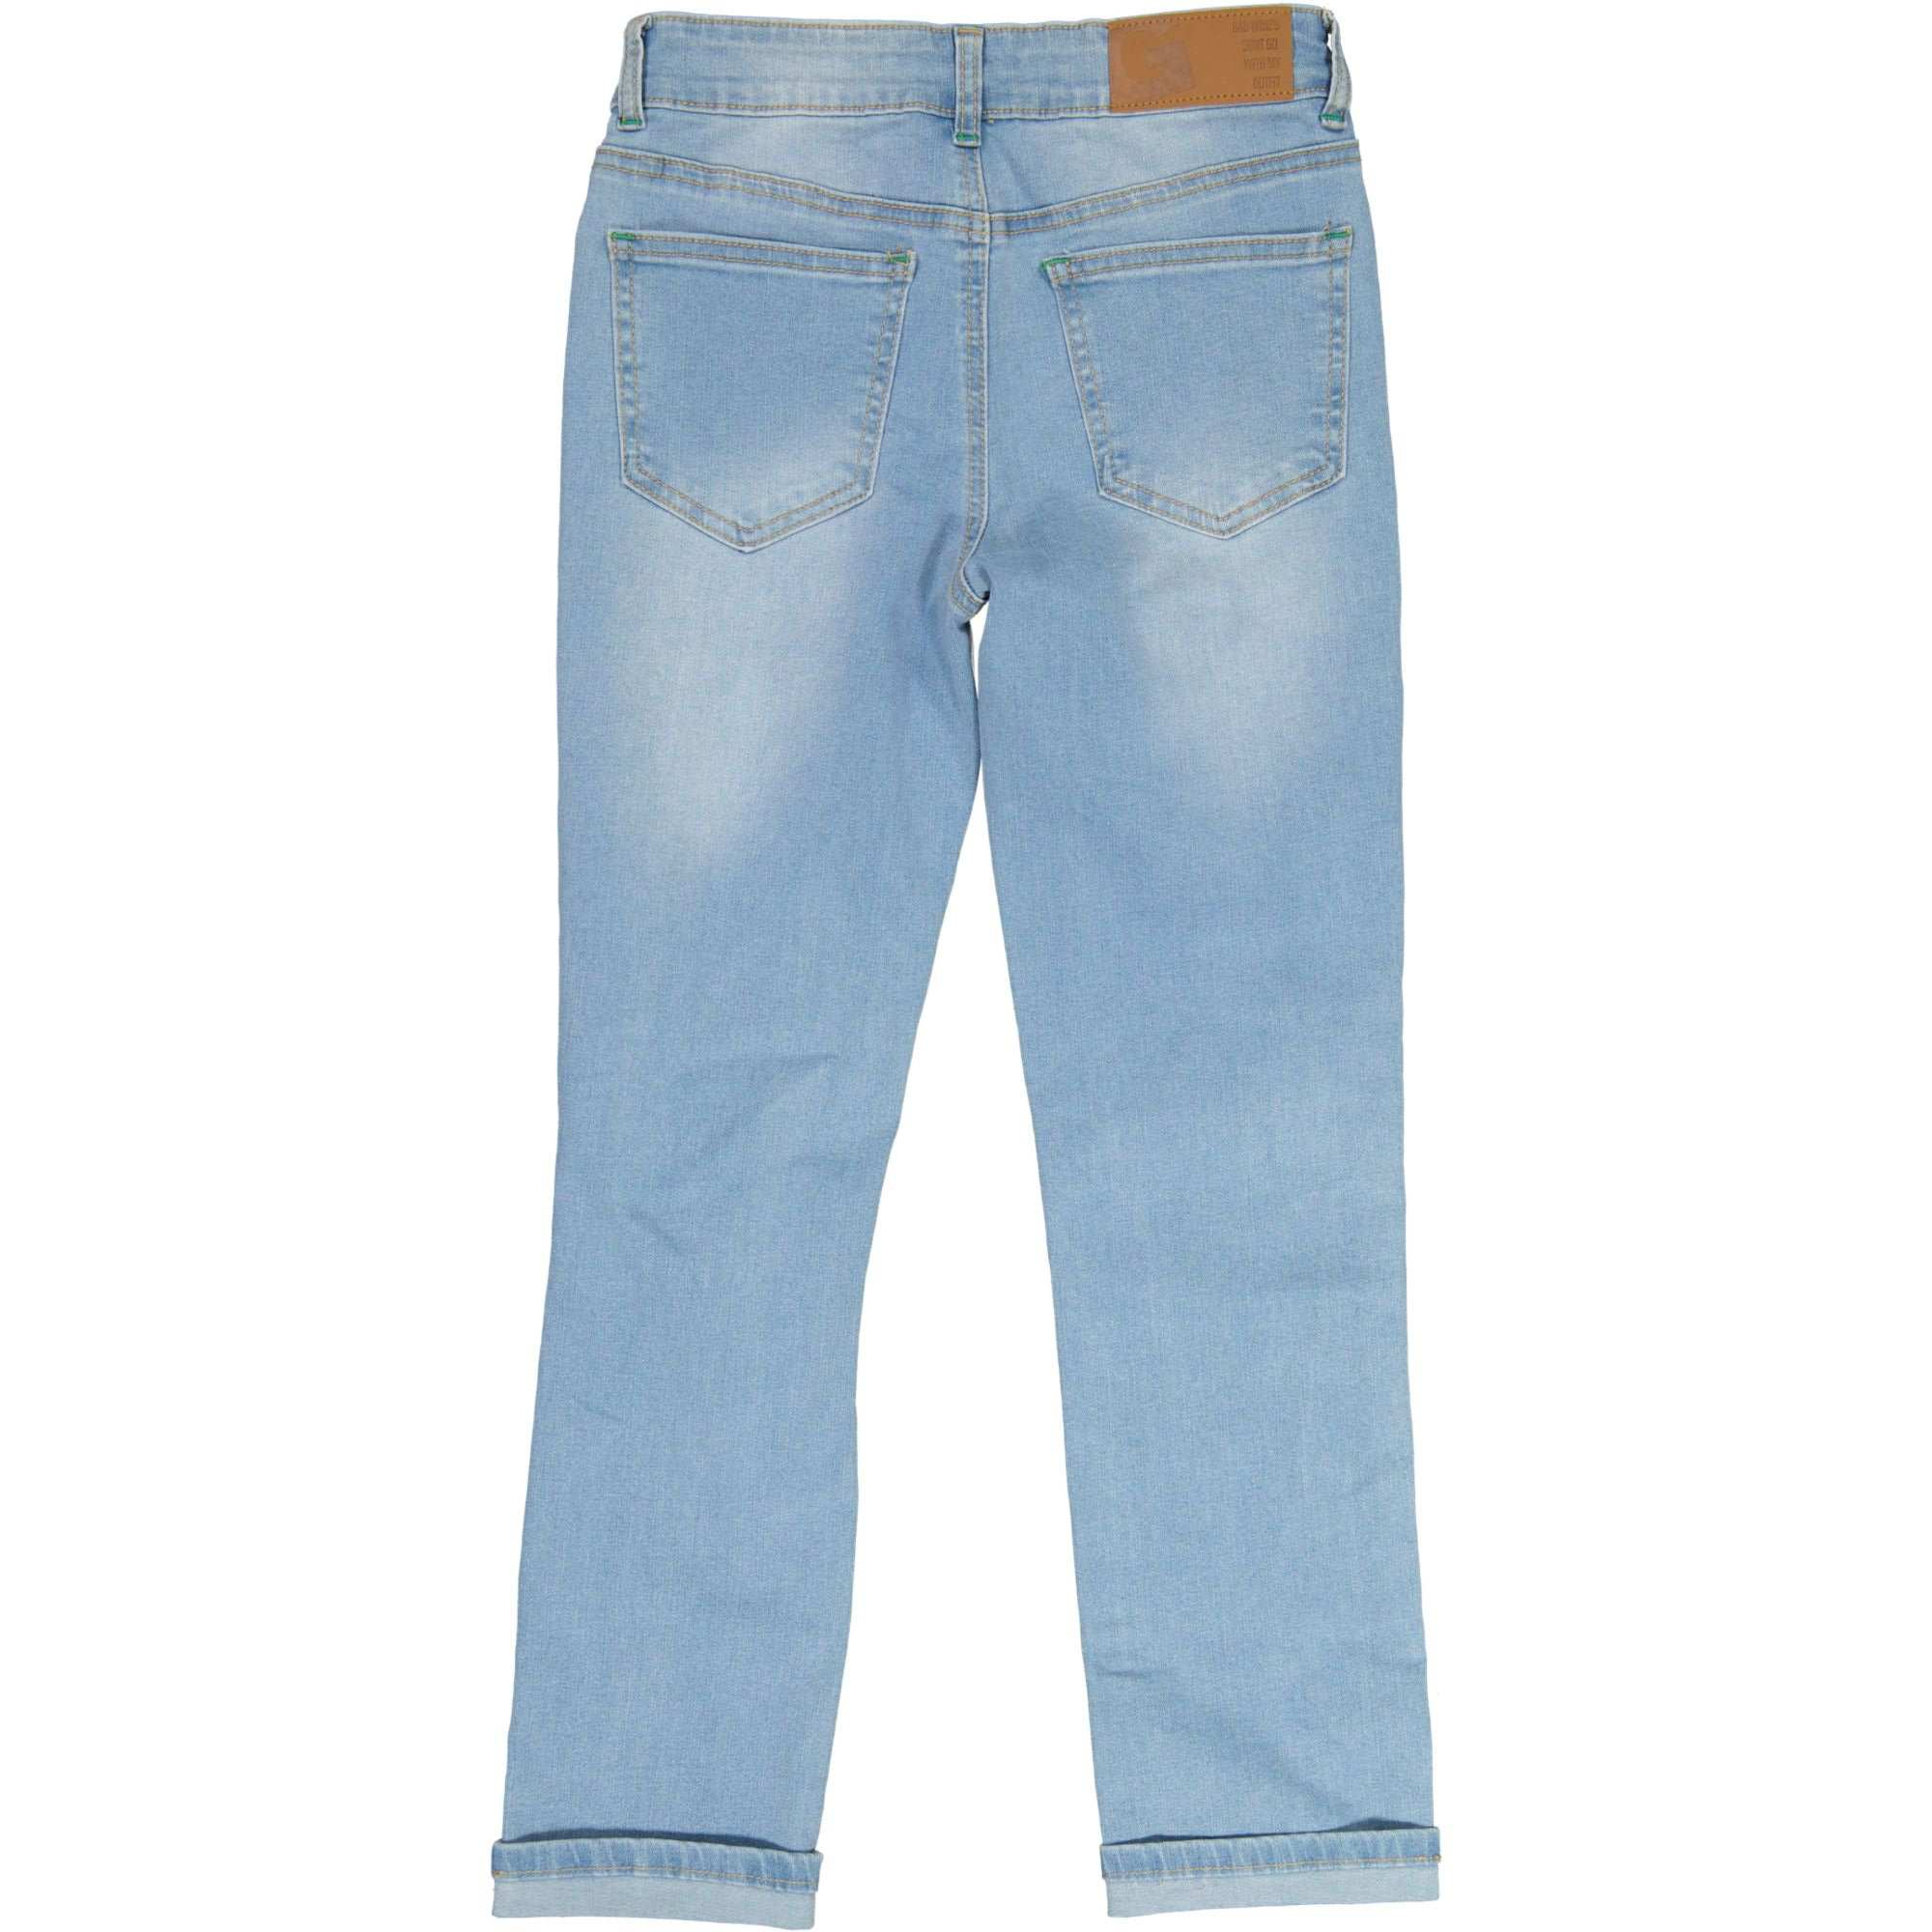 Unisex loose fit jeans Denim Sininen wash